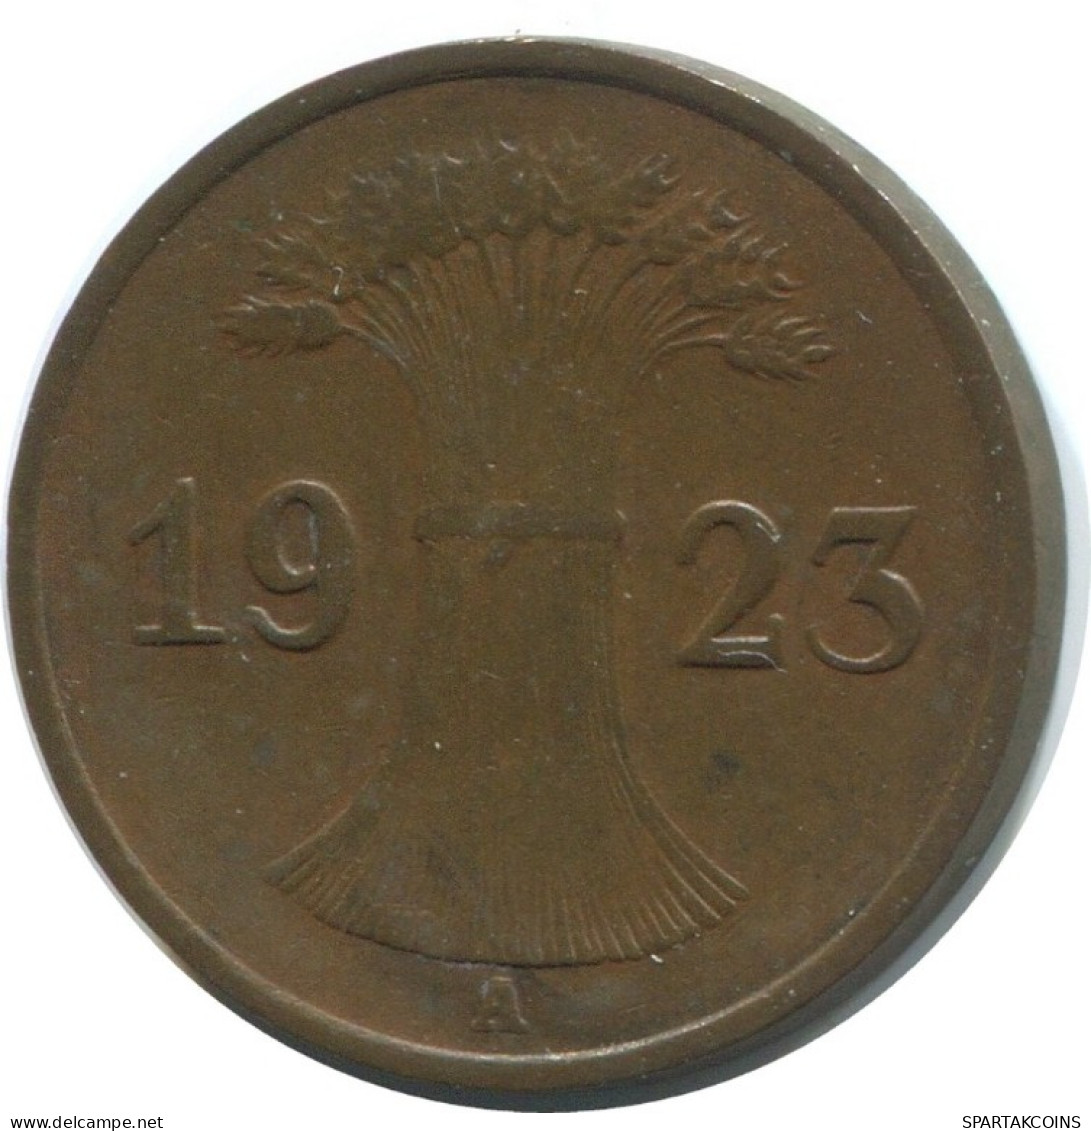 1 RENTENPFENNIG 1923 A DEUTSCHLAND Münze GERMANY #AE193.D.A - 1 Rentenpfennig & 1 Reichspfennig